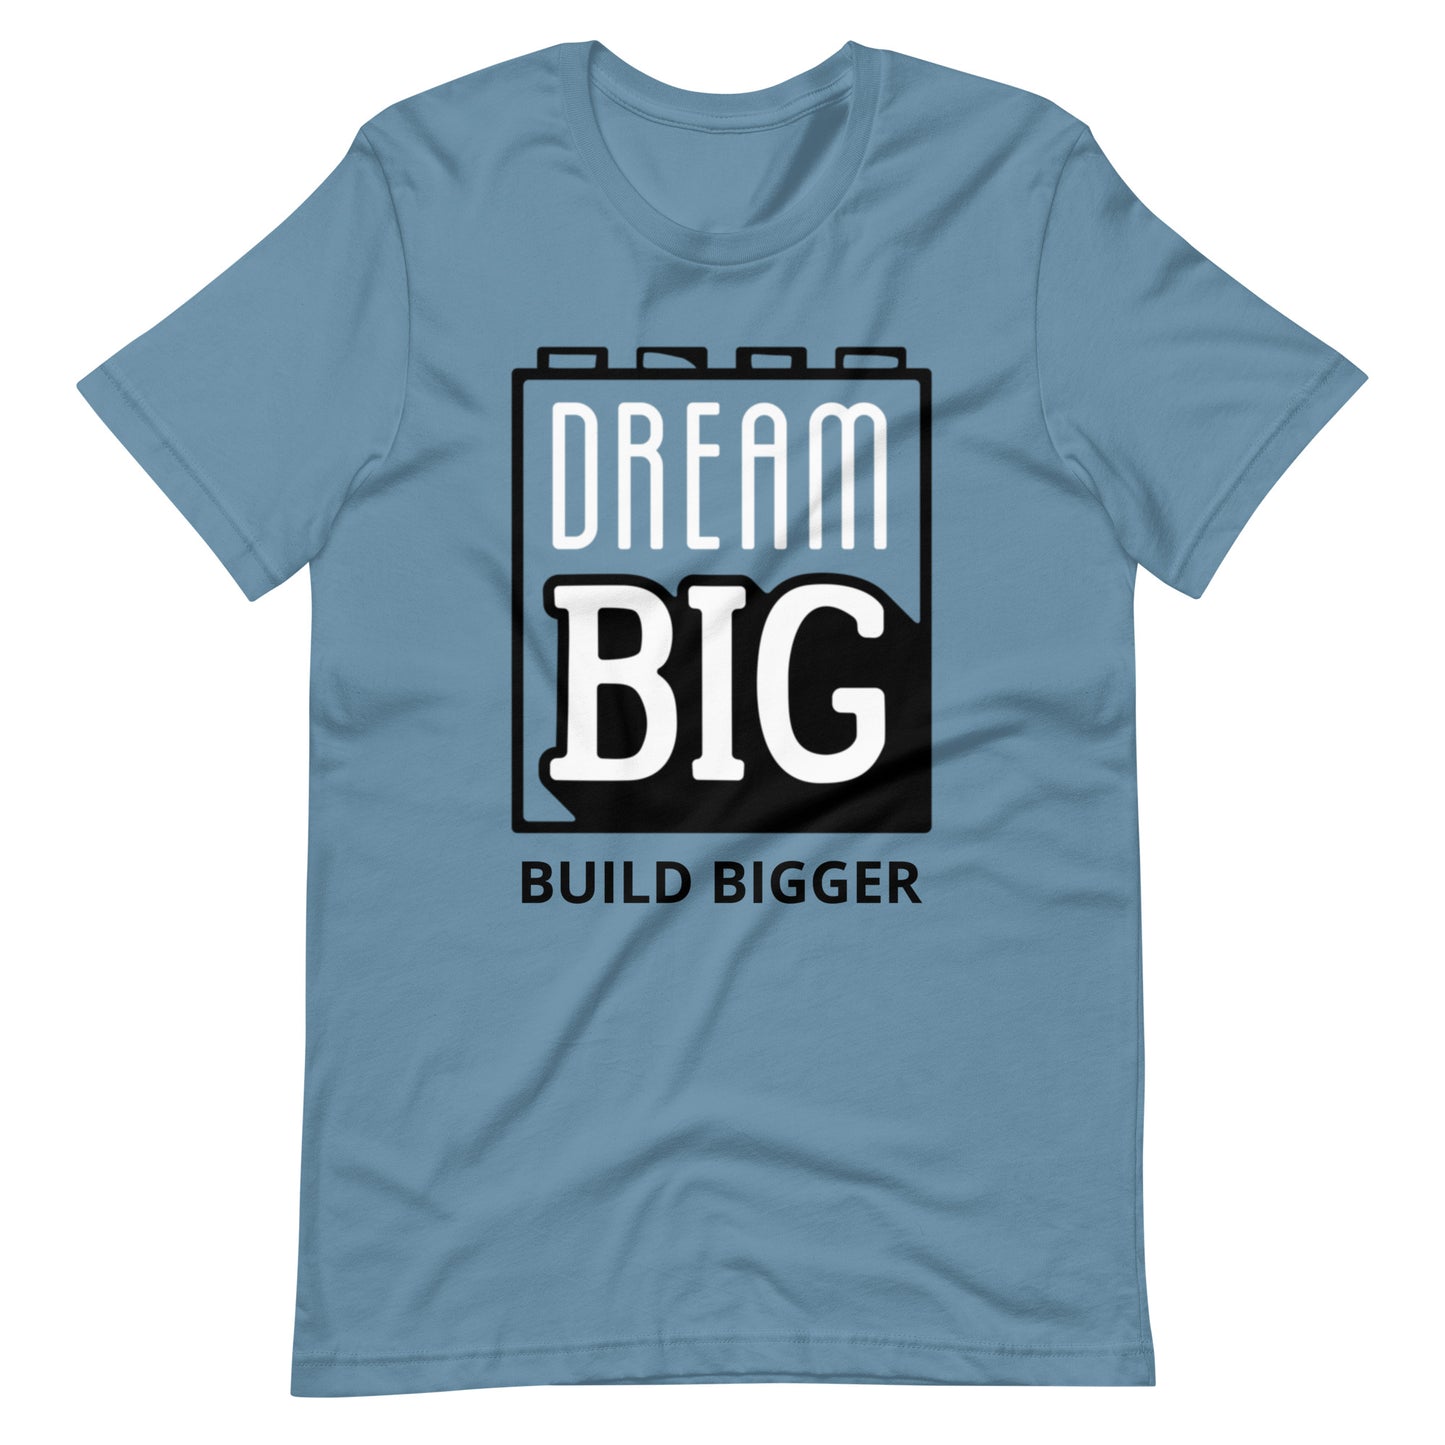 Dream Big - Build Bigger - Tee